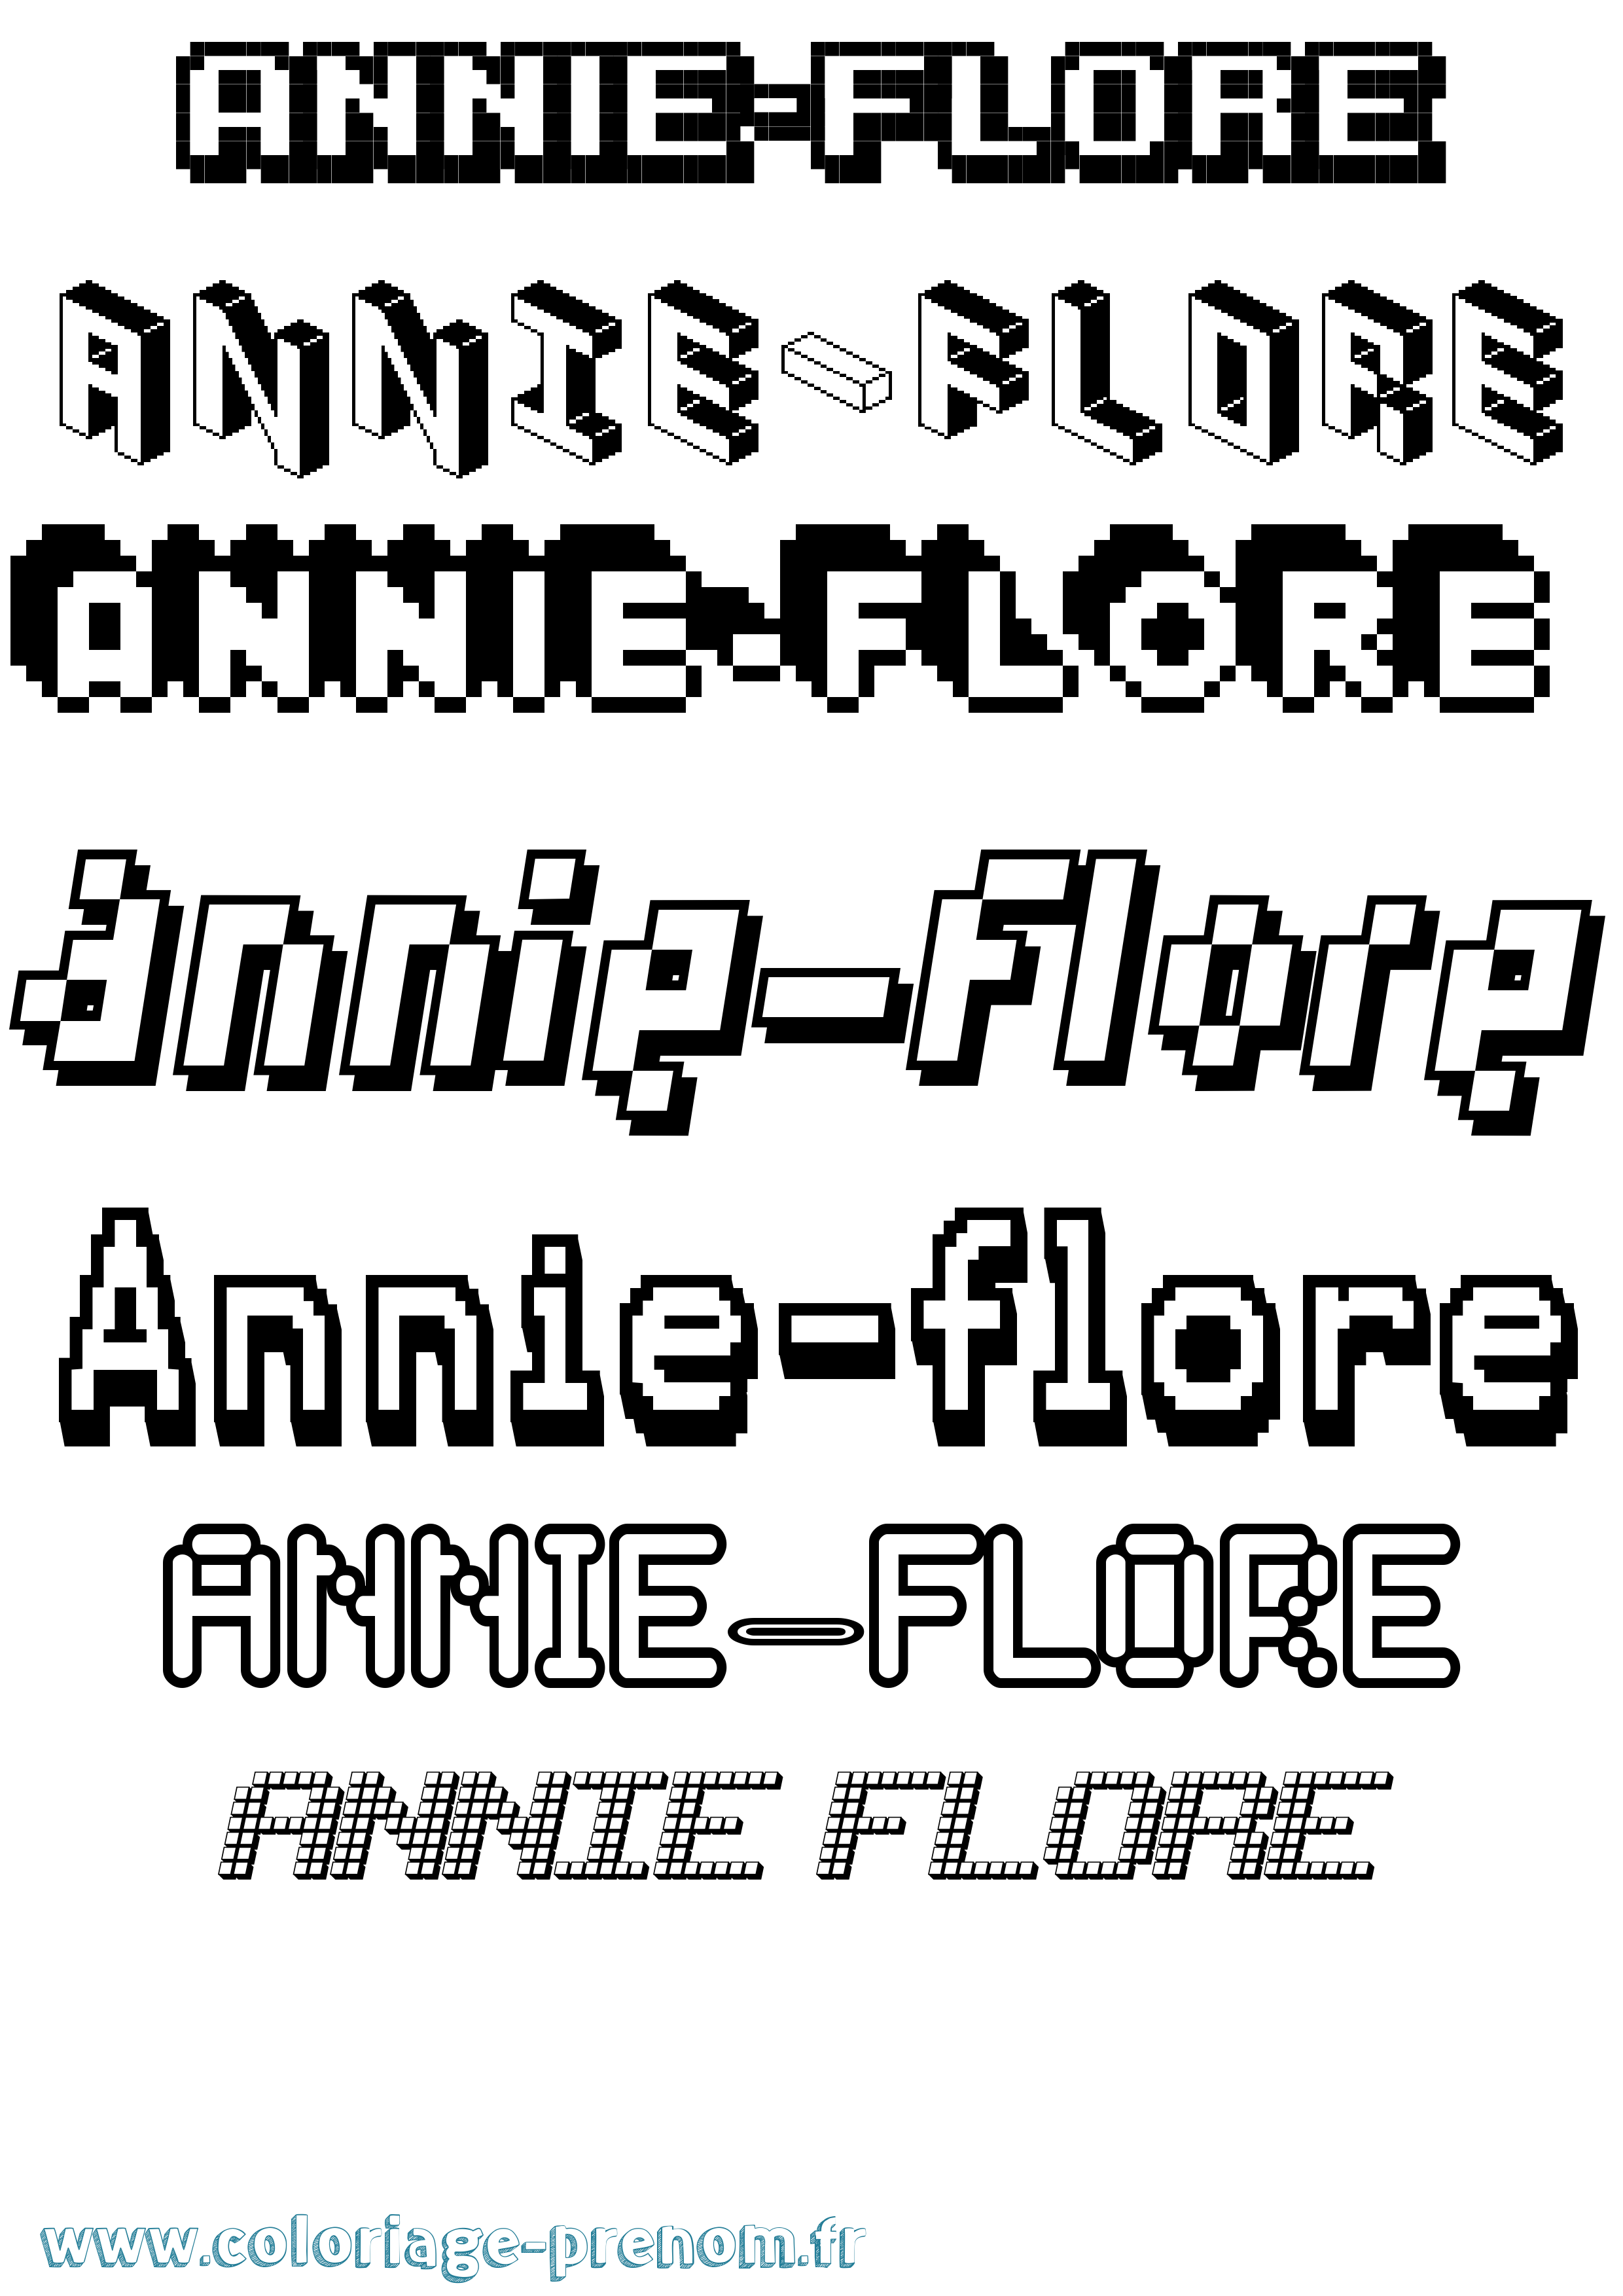 Coloriage prénom Annie-Flore Pixel